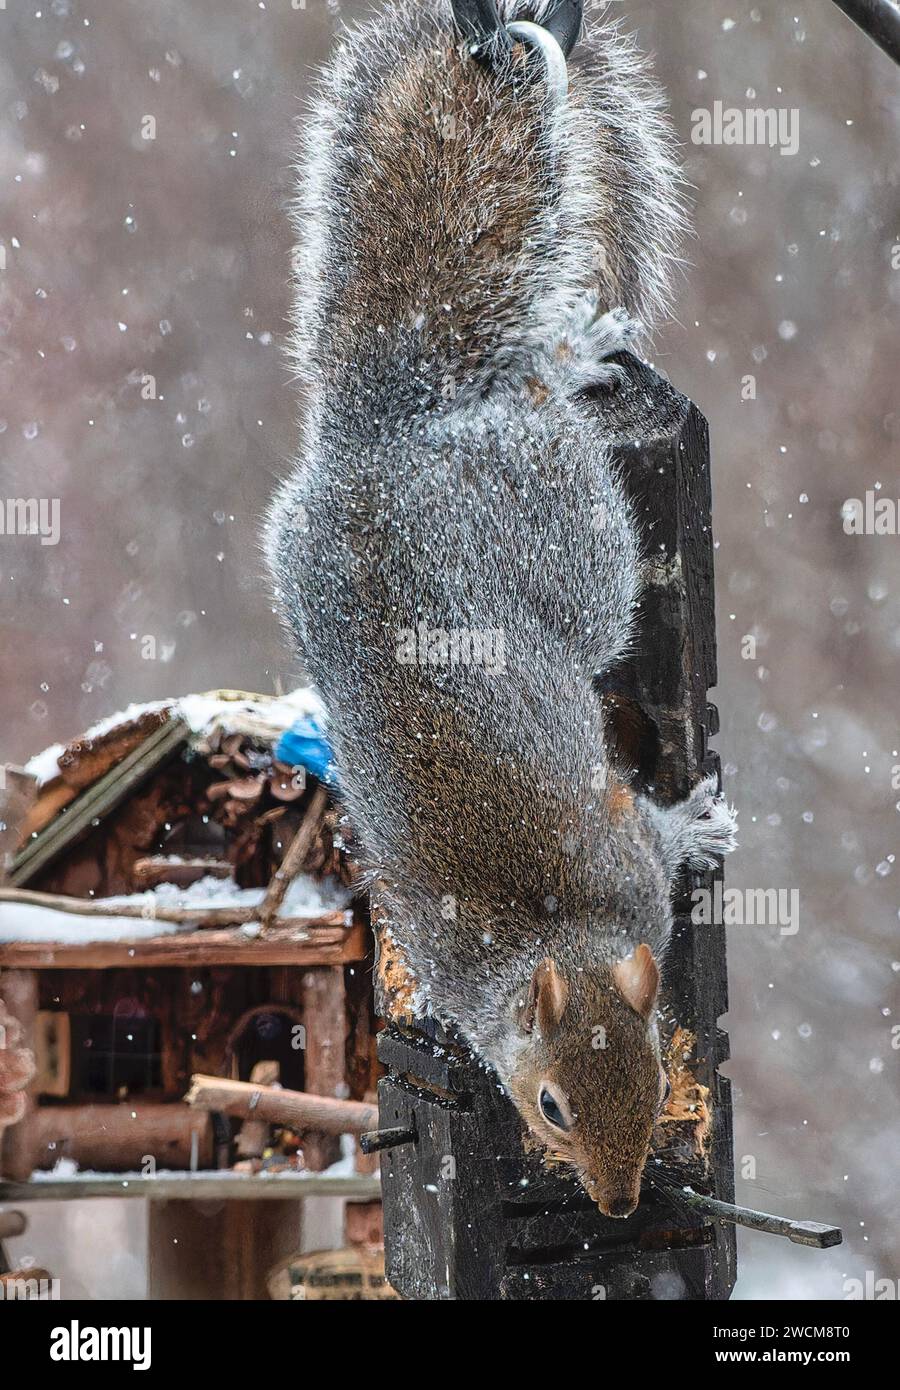 Un écureuil gris dans la neige Banque D'Images